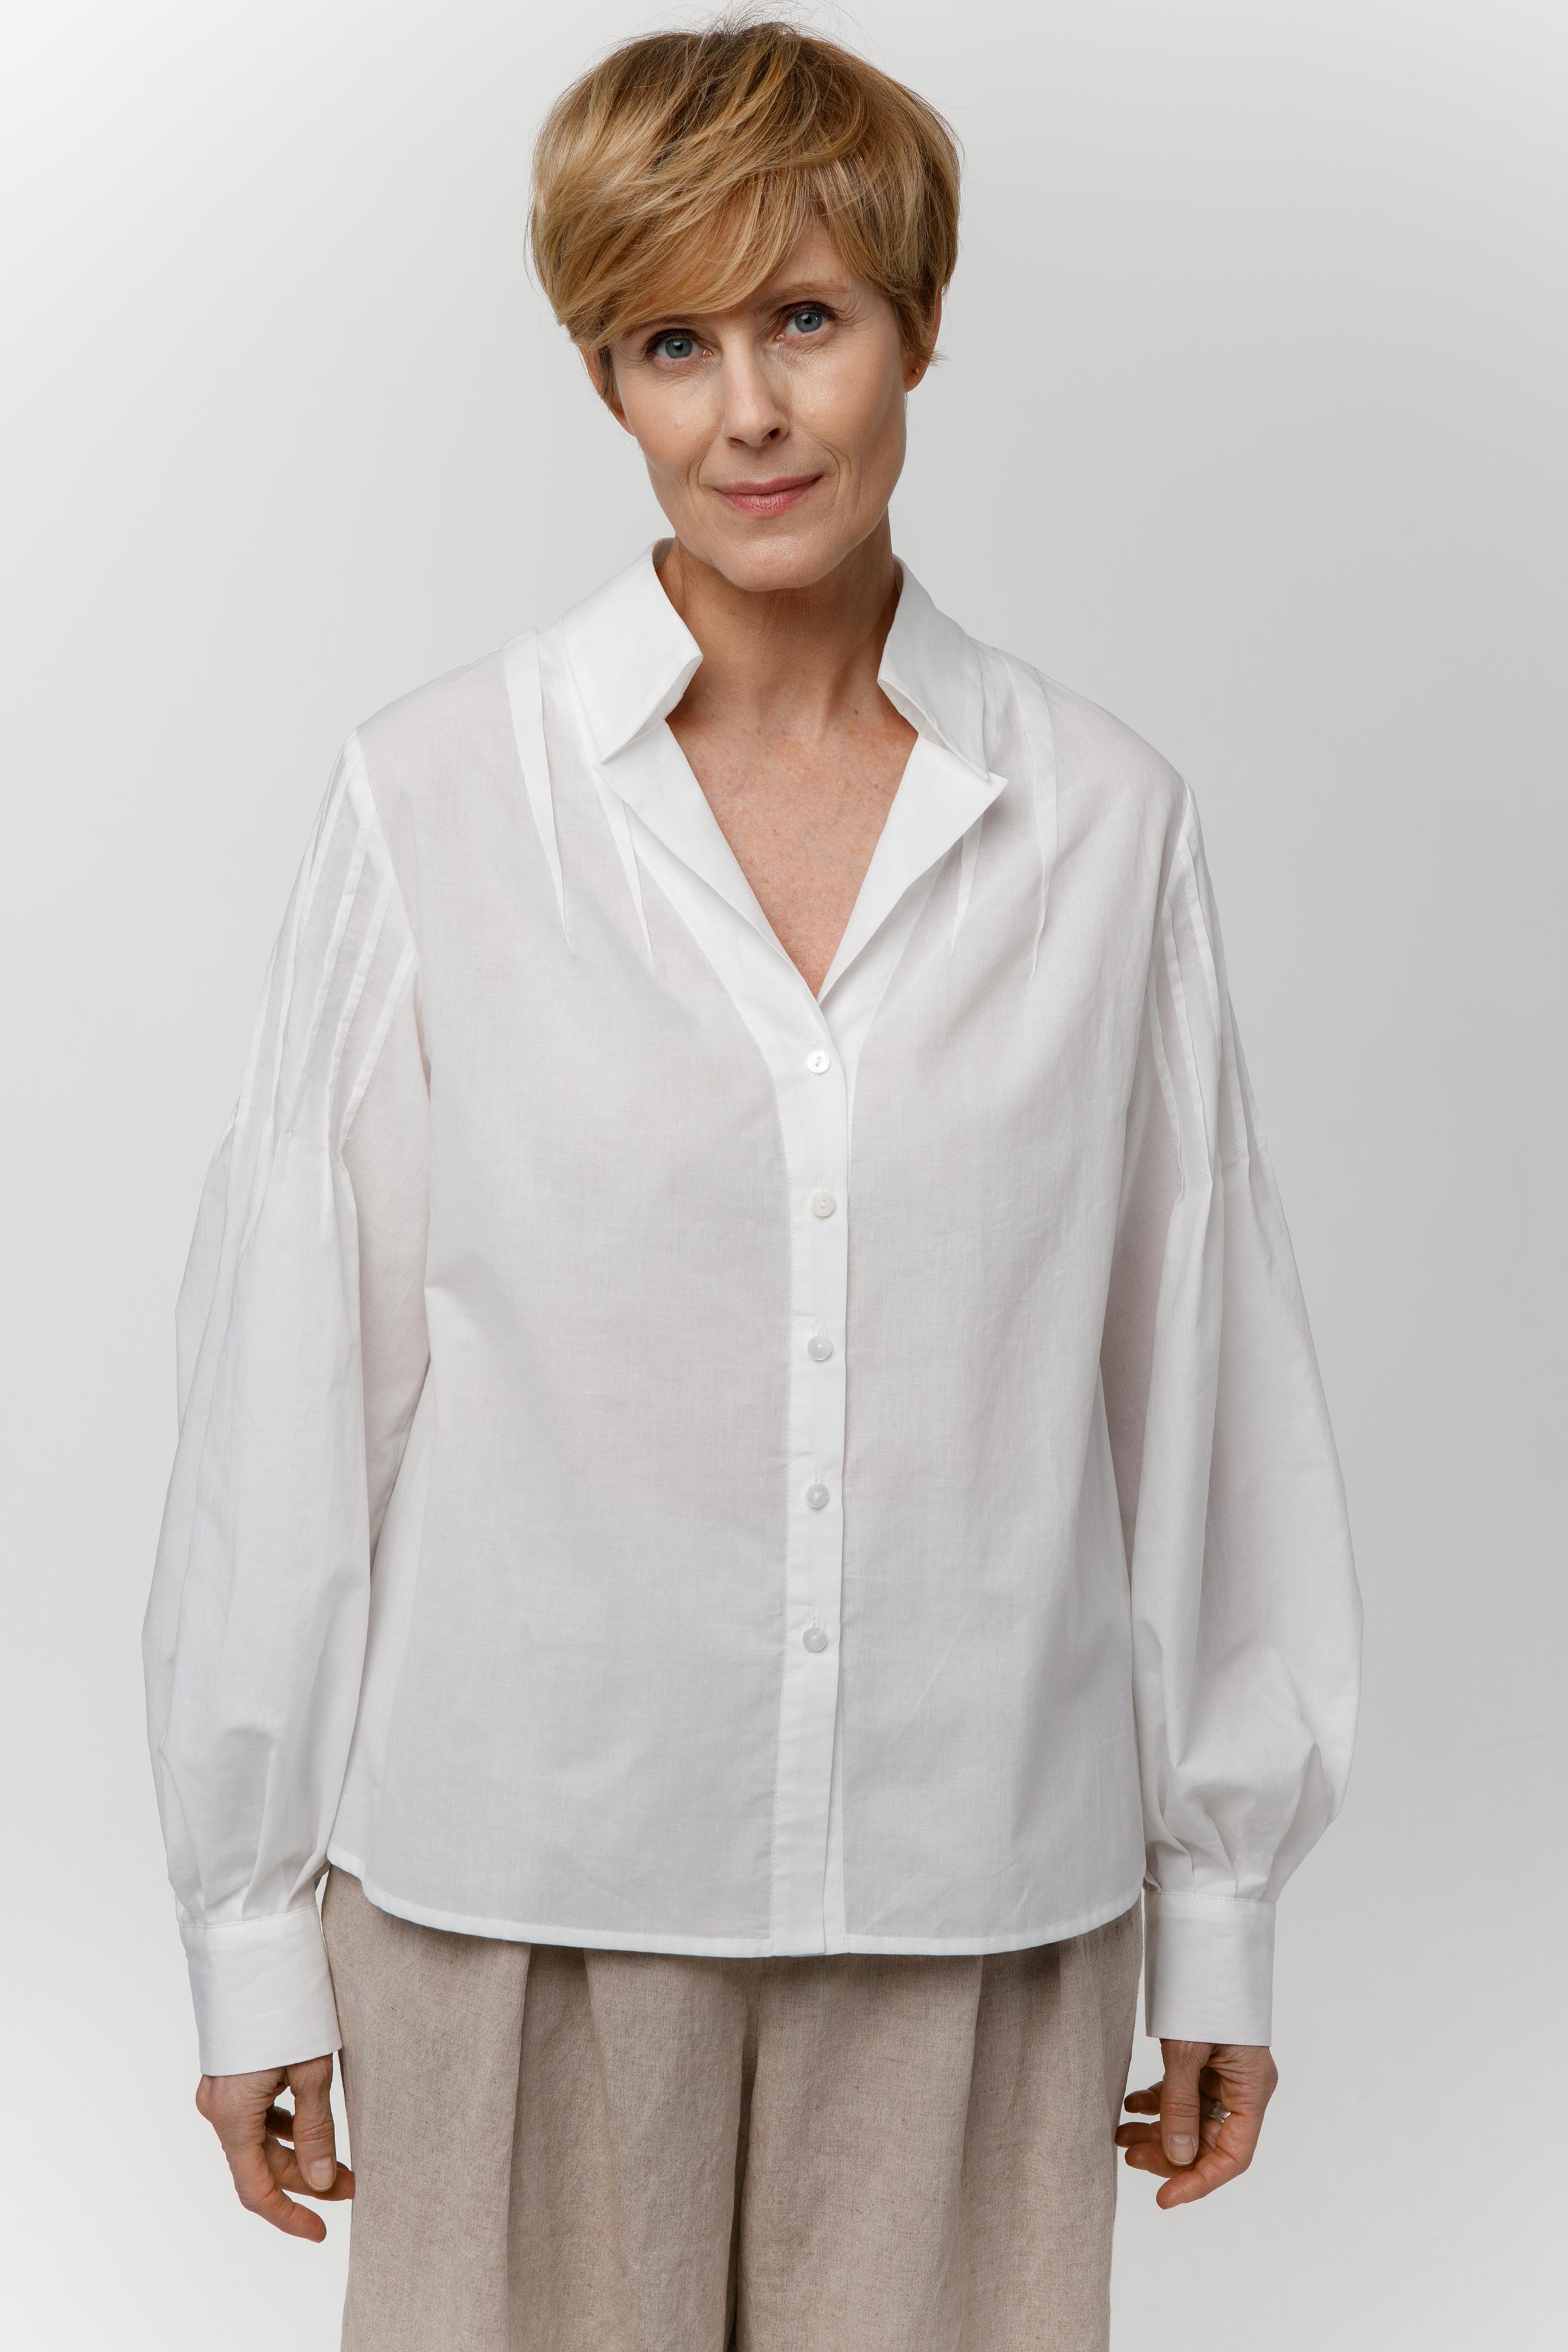 Блуза с защипами 01 Мел (craie) от Lesel (Лесель)! Заказывайте по ✆ 8 (800) 777 02 37